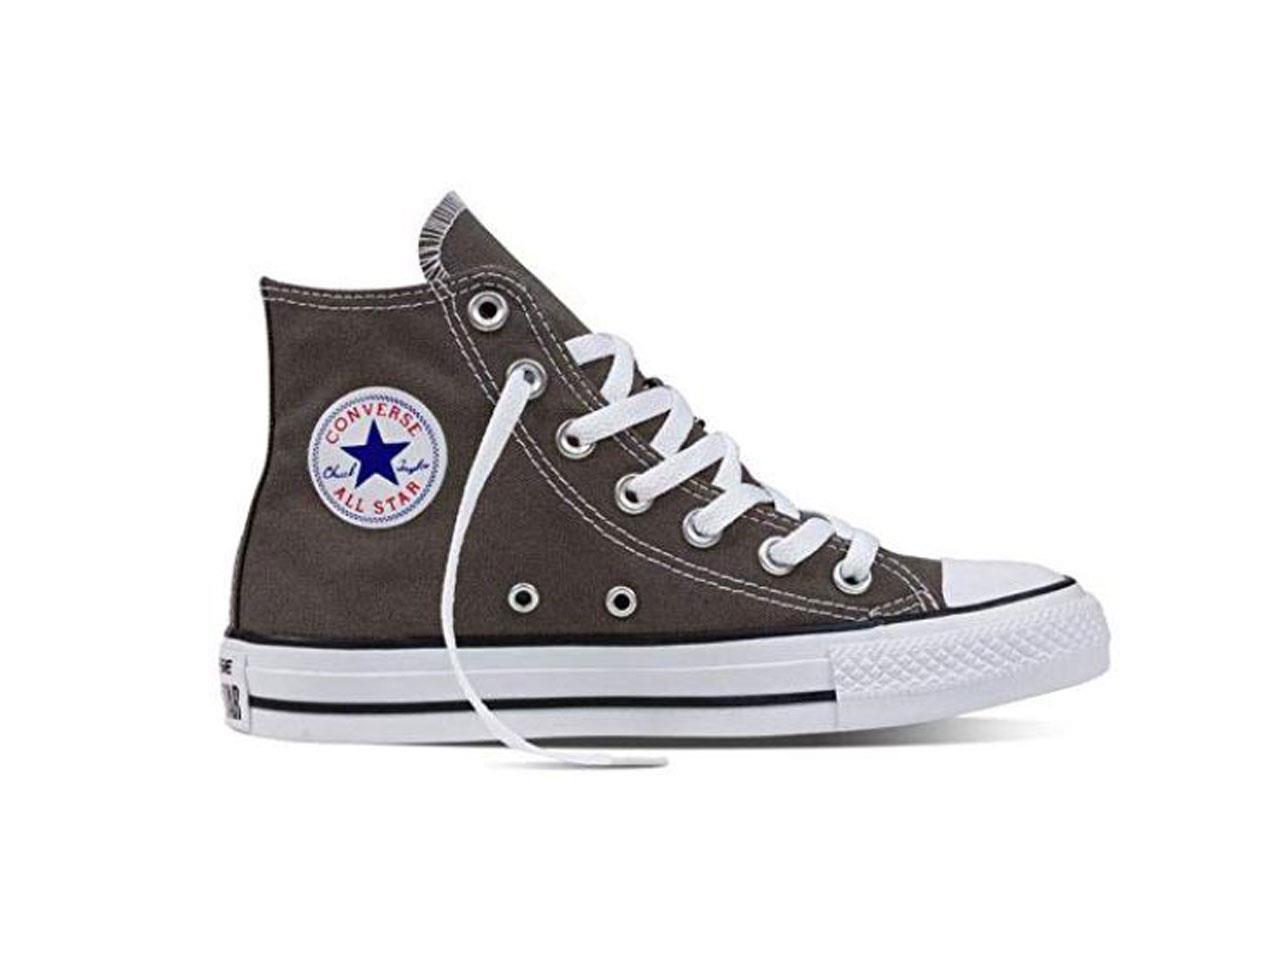 converse zapatillas Chuck Taylor All Star Core Hi de Converse, 59,90€ (antes 70€)